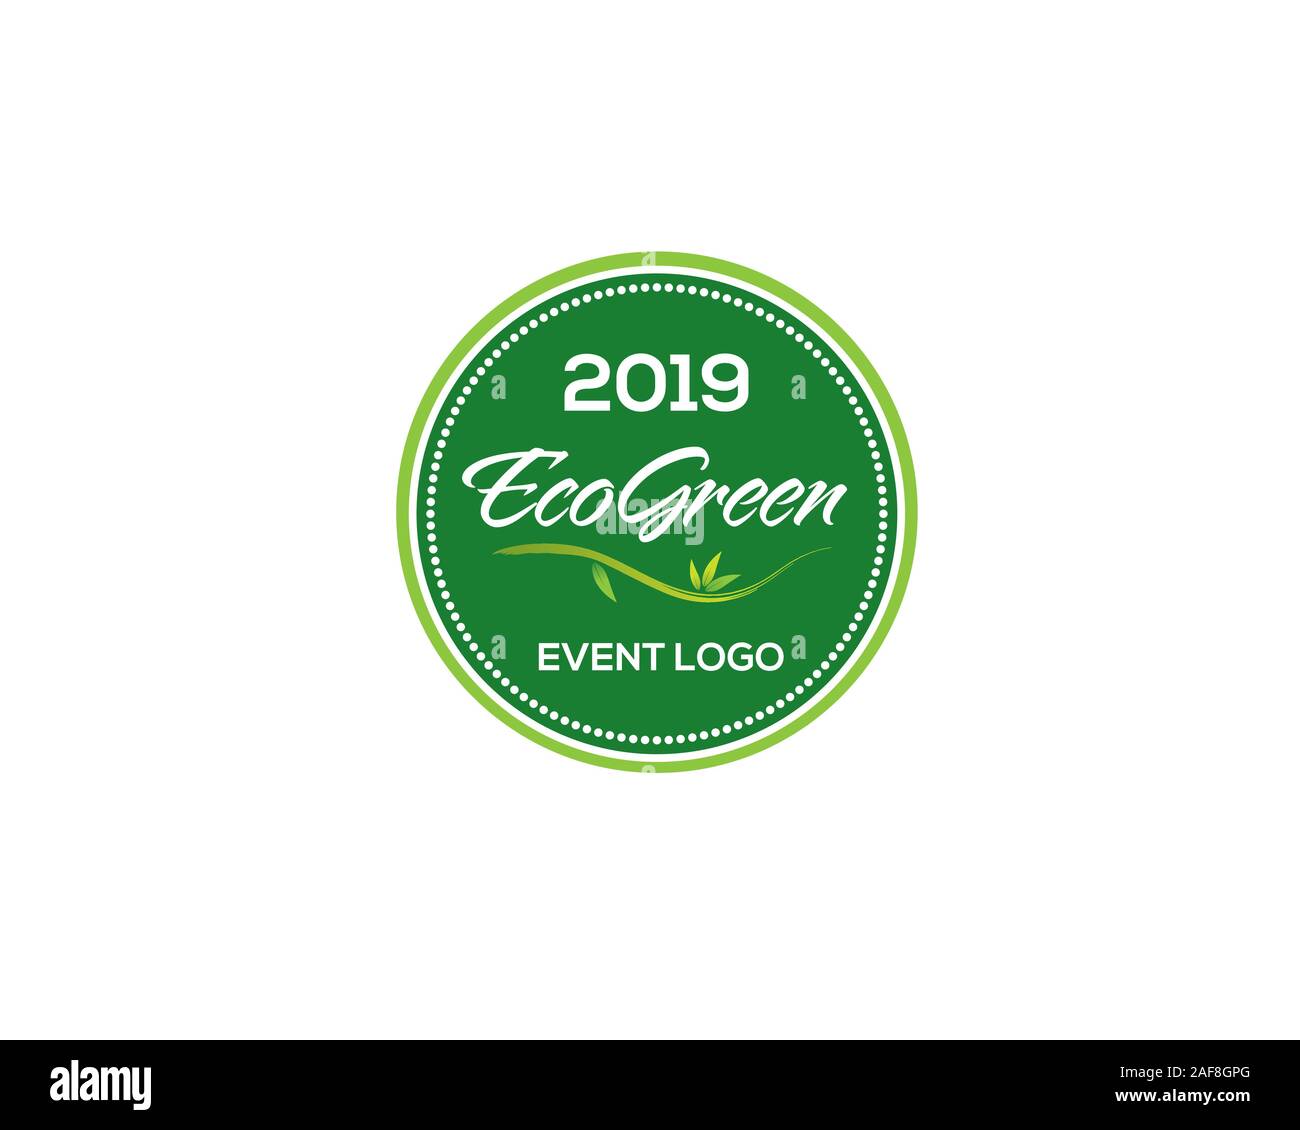 2019 internationale Eco Green Logo Stock Vektor